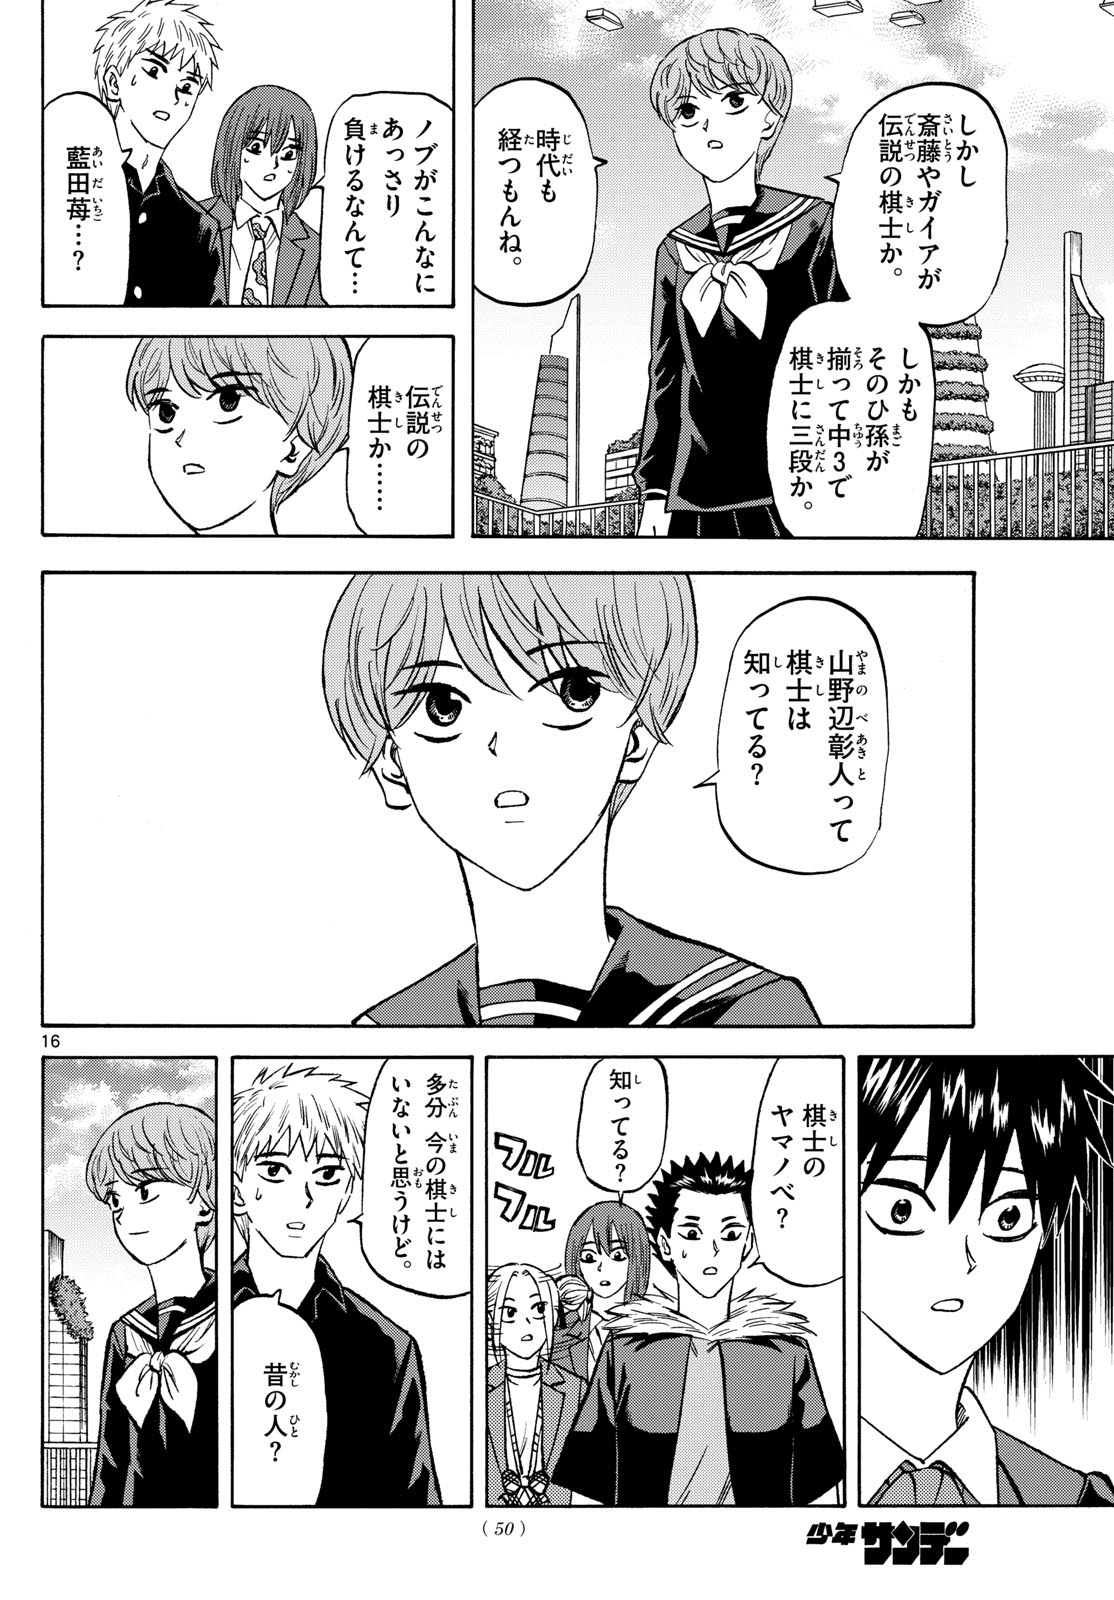 Tatsu to Ichigo - Chapter 187 - Page 16